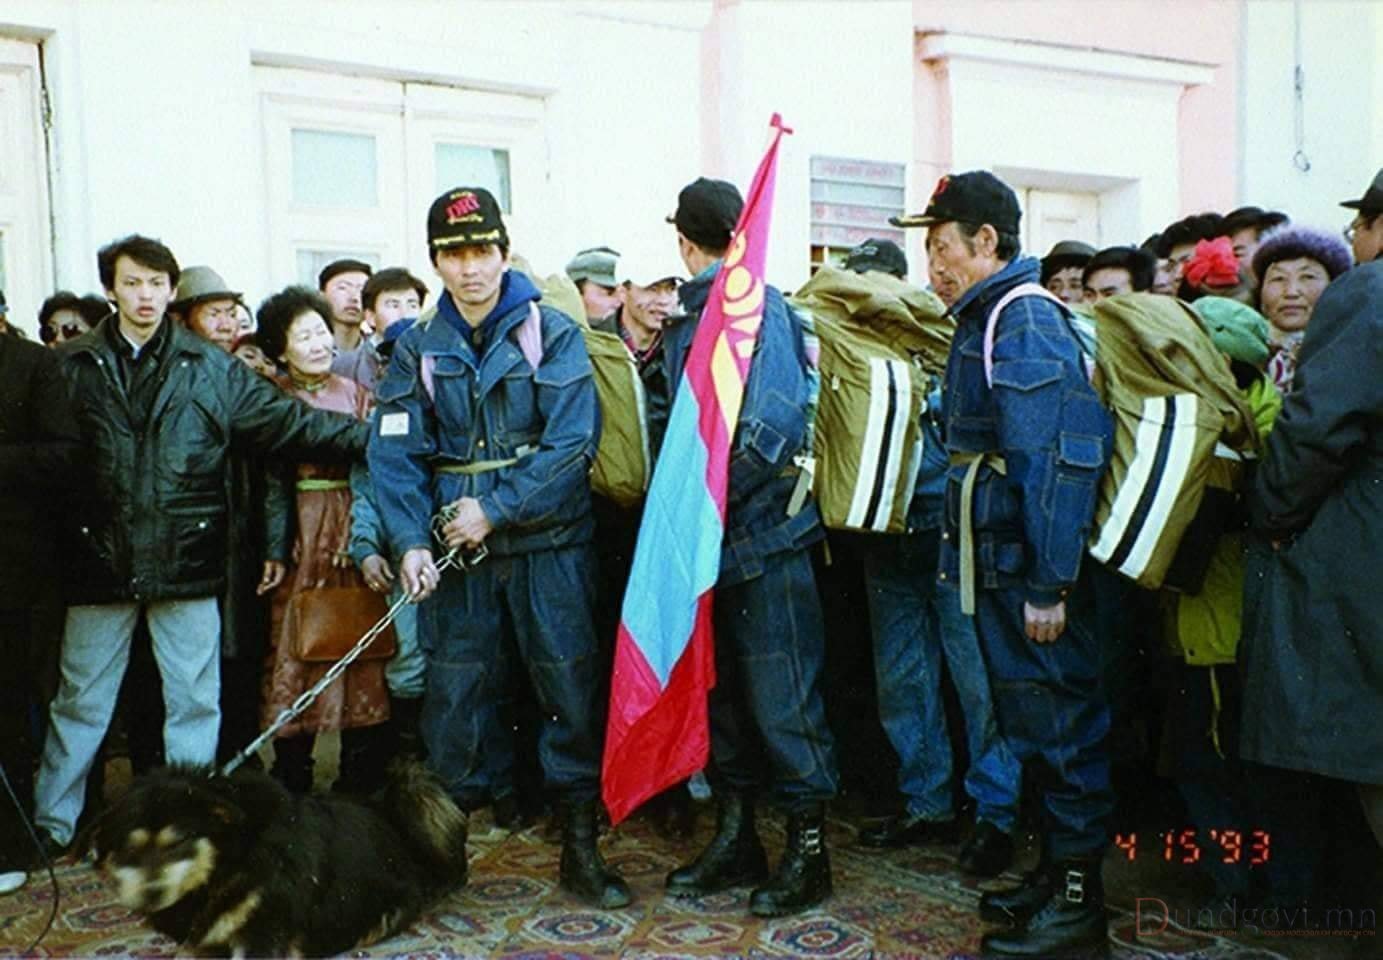 1993-онд Монголоос-Америк хүртэл аялсан Банхар нохойн түүх